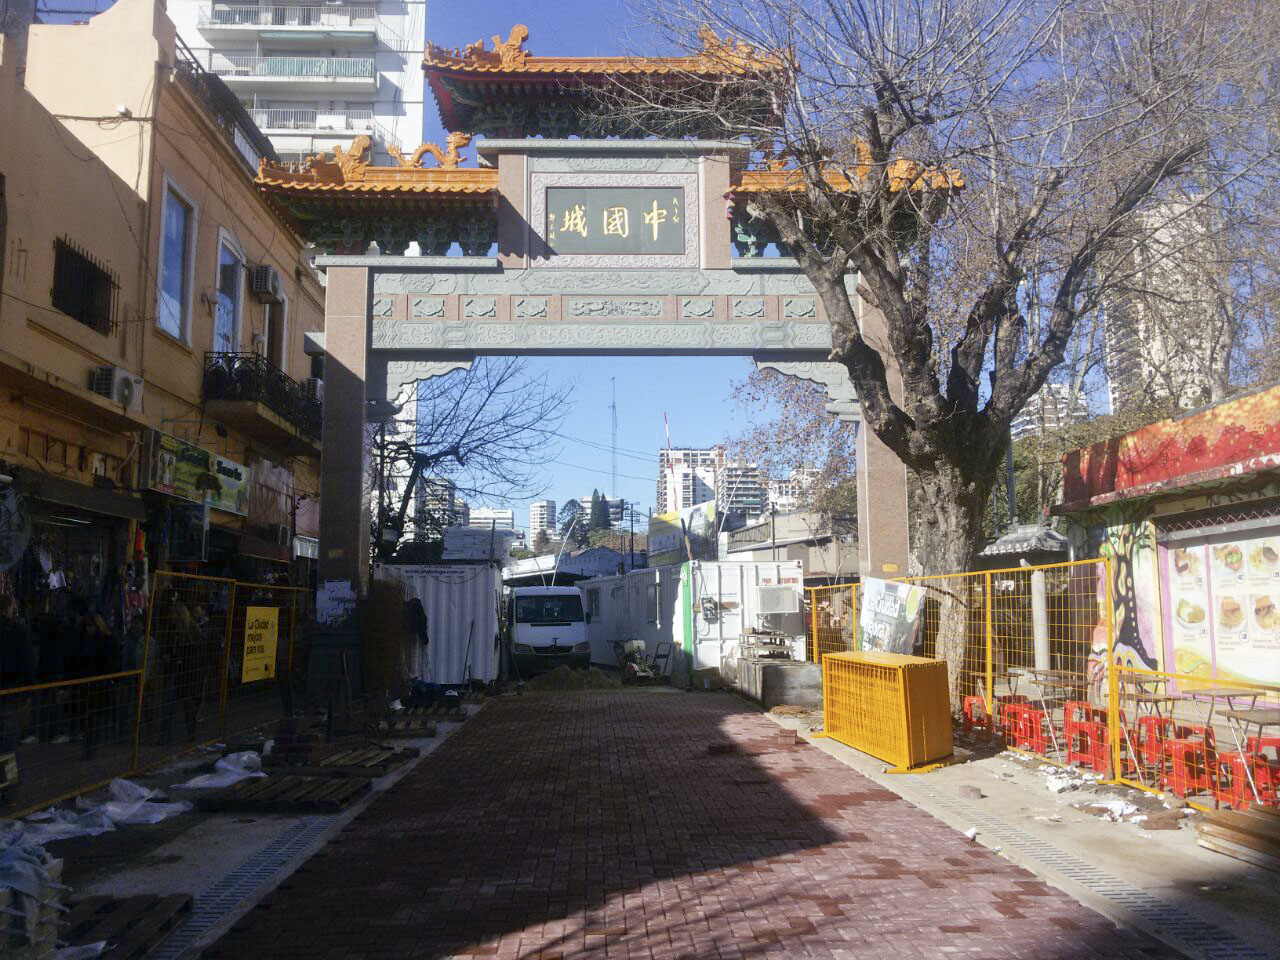 Continúan las obras en el barrio chino